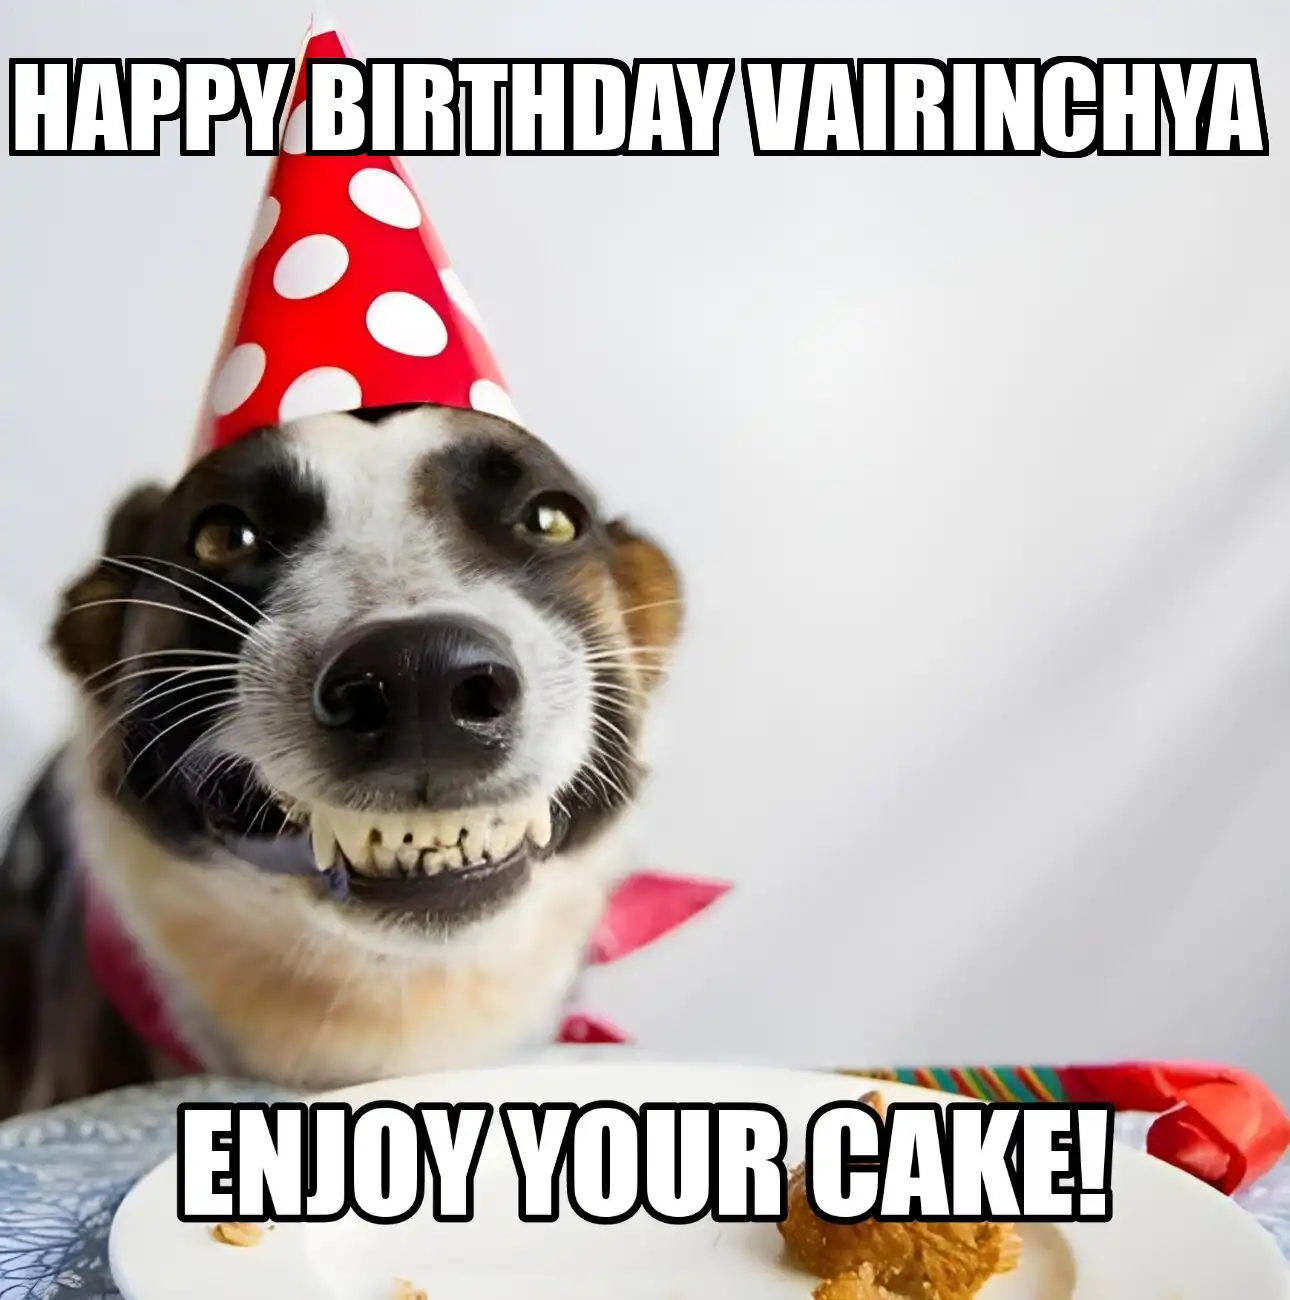 Happy Birthday Vairinchya Enjoy Your Cake Dog Meme